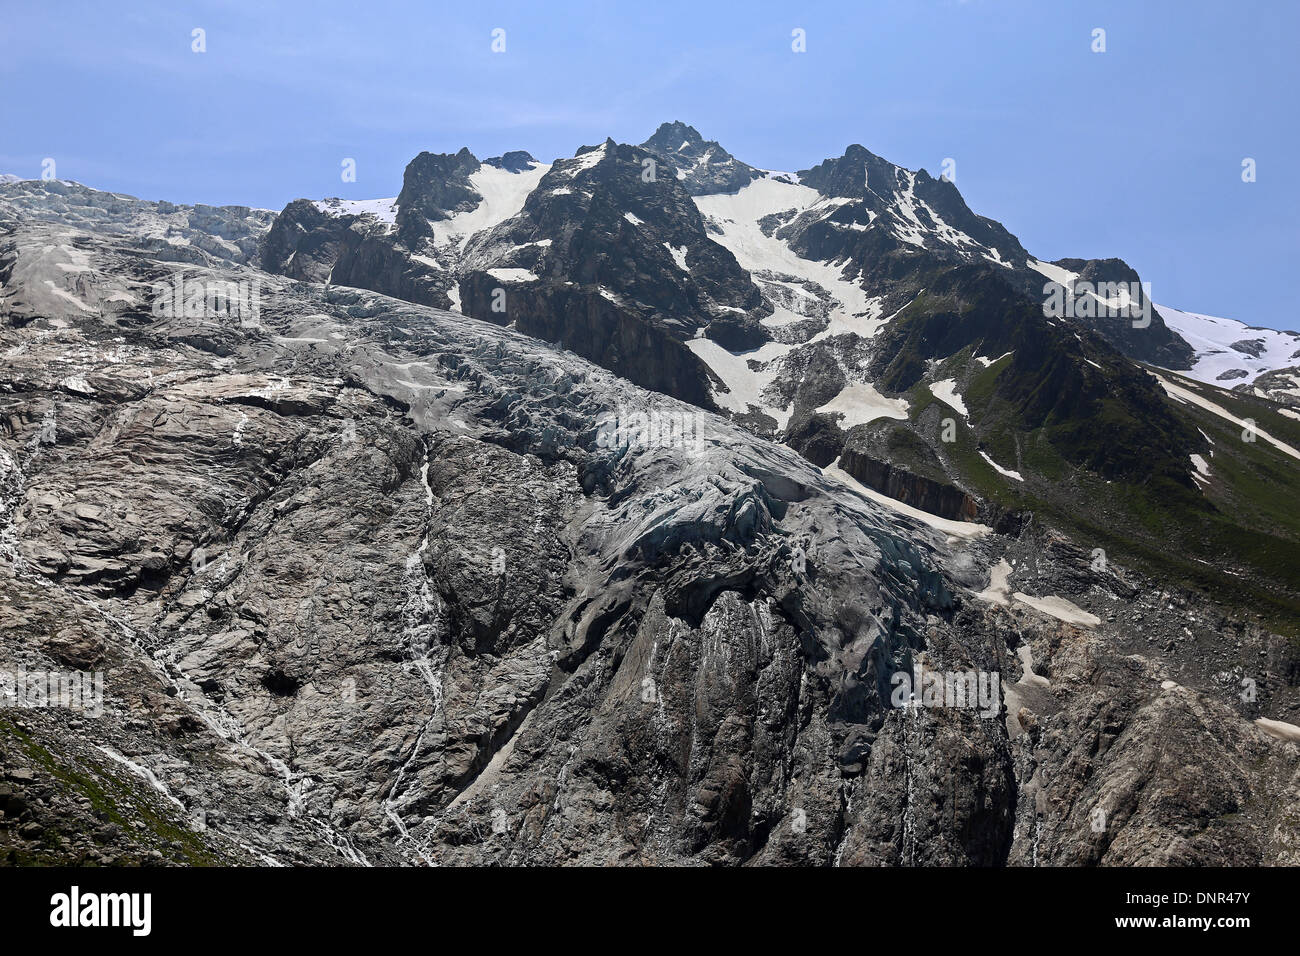 Il Ghiacciaio del Trient. Sheepbacks rocce. Il Mont Blanc massiccio montuoso. Paesaggio alpino delle Alpi Svizzere. Foto Stock